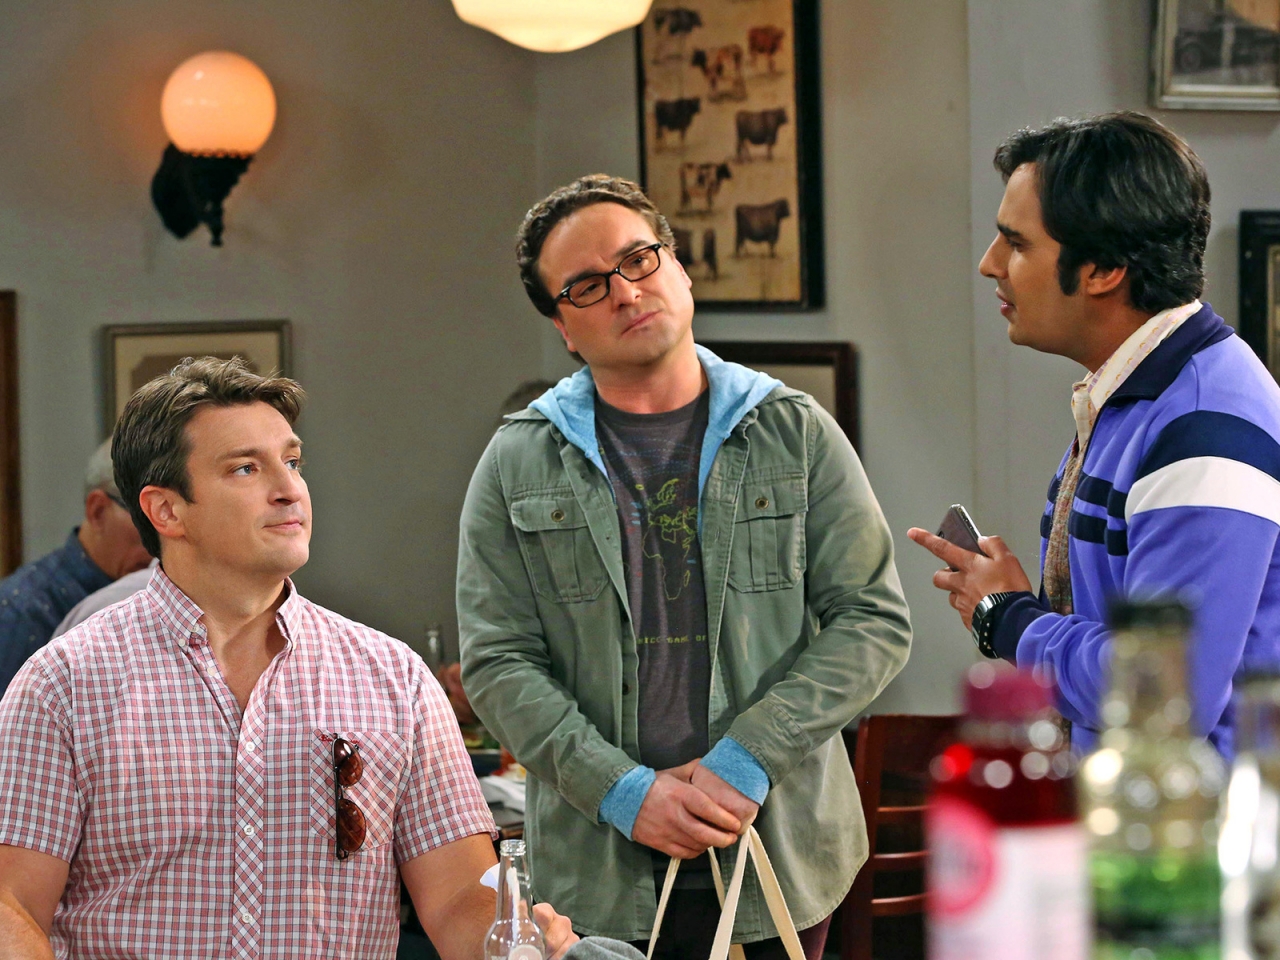 The Big Bang Theory Leonard, Raj and Nathan for 1280 x 960 resolution